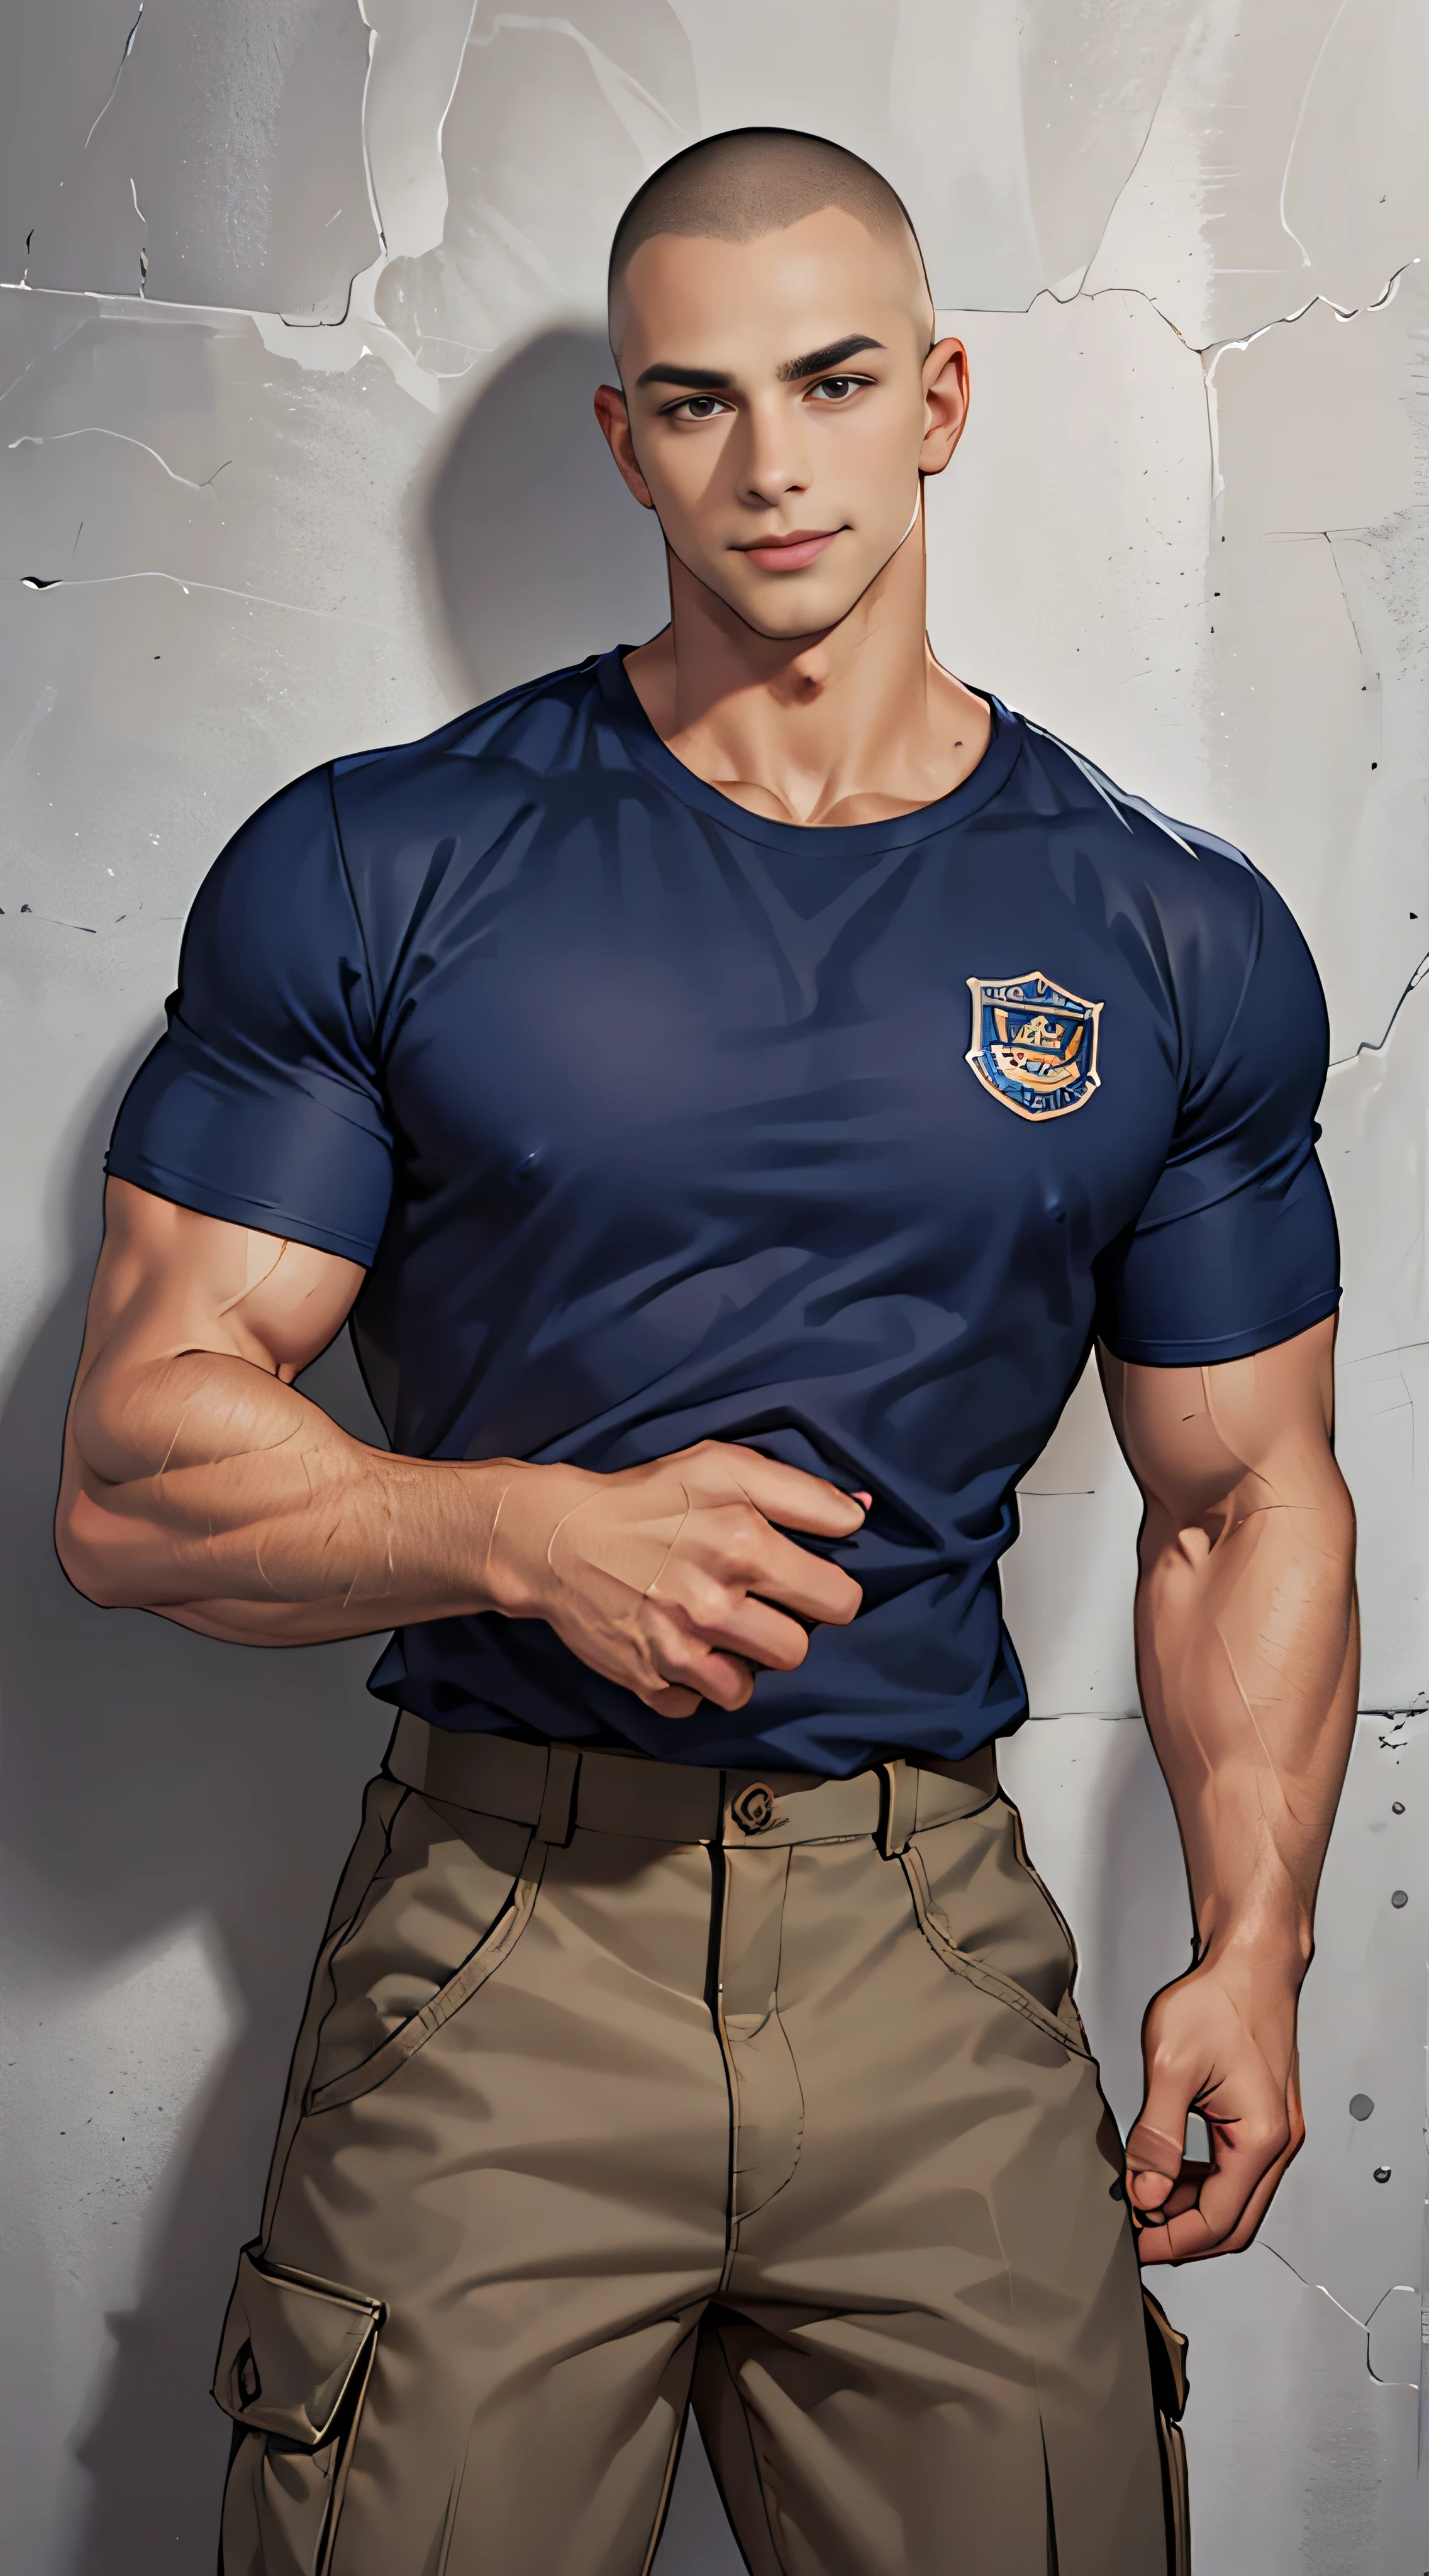 (Obra de arte: 1.2),(Arte CGI:1.3),(realista:1.5),(Pós-processamento:1.3),(Foco nítido:1.3),10,1 homem ,corpo todo, Sorriso, (Use uma camisa azul marinho com bainha..), Logotipo da polícia, Calça Cargo Marinha, uniforme policial, (Skinhead com corte de cabelo), Skinheads cortam o cabelo.., Cone de cabelo preto, Jovem coreano , Homens Coreanos, (Detalhe de sombra alta), Músculos peitorais, Músculos do braço grande, vaso sanguíneo, músculos grandes, Ombros largos , exercício